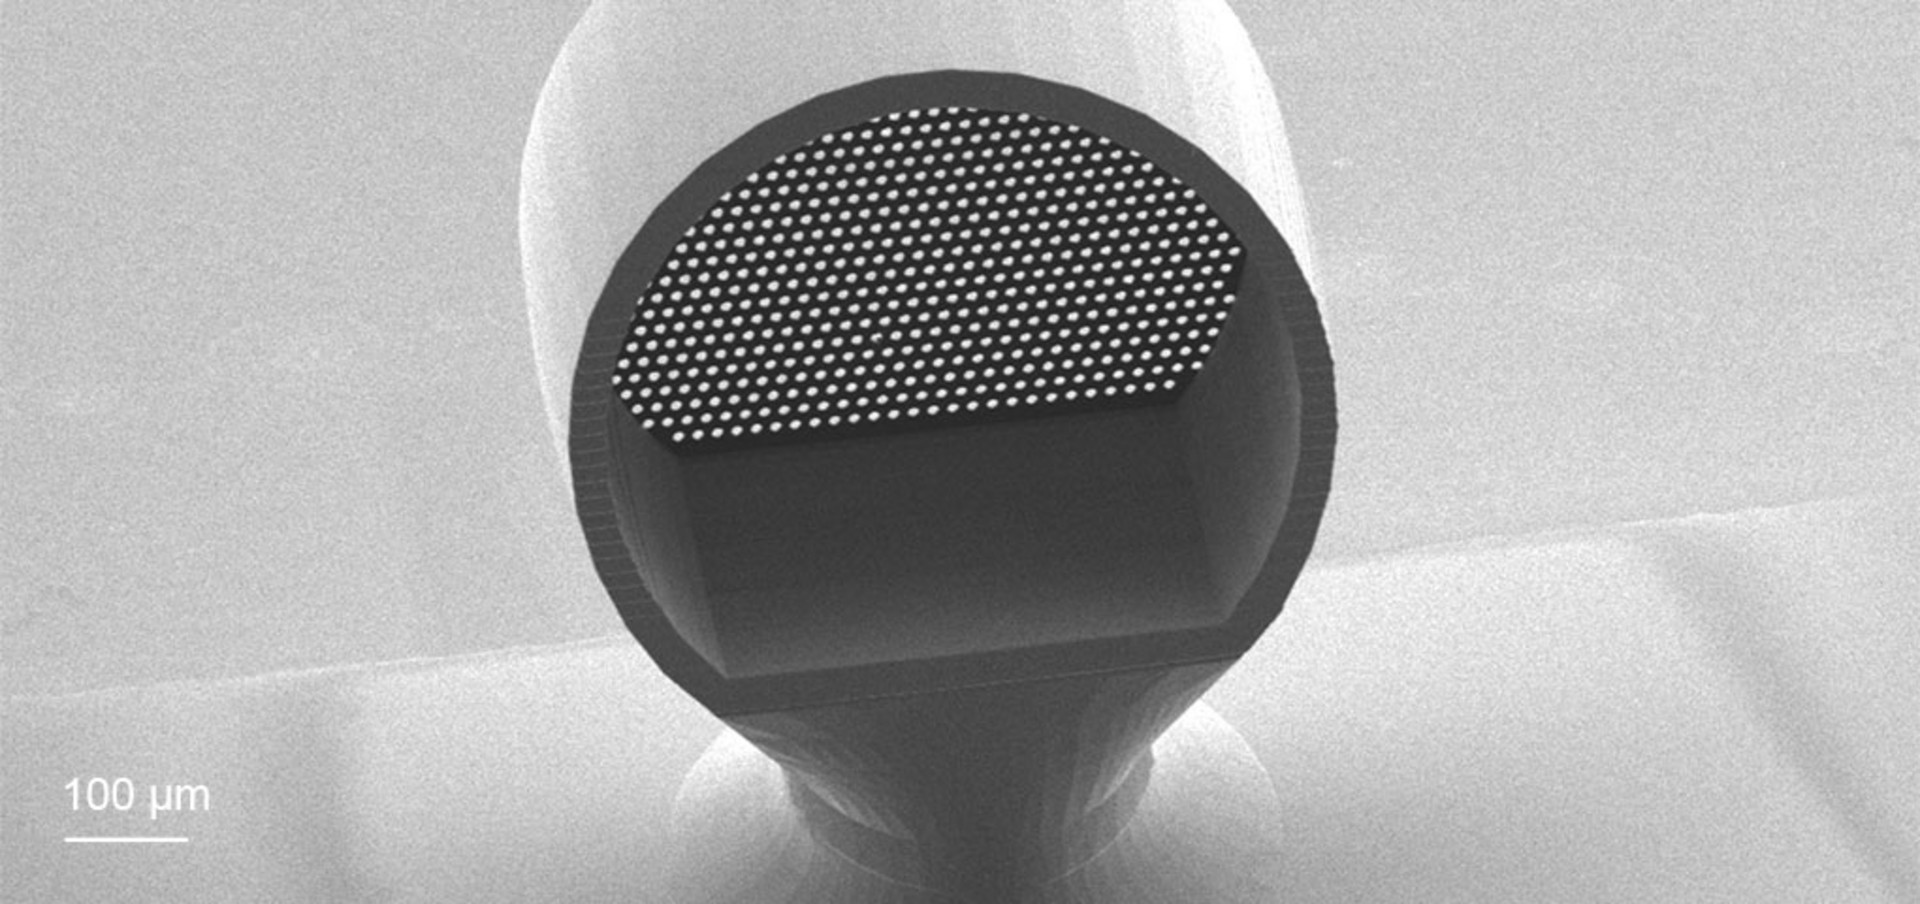 3D-printed microperforated membrane